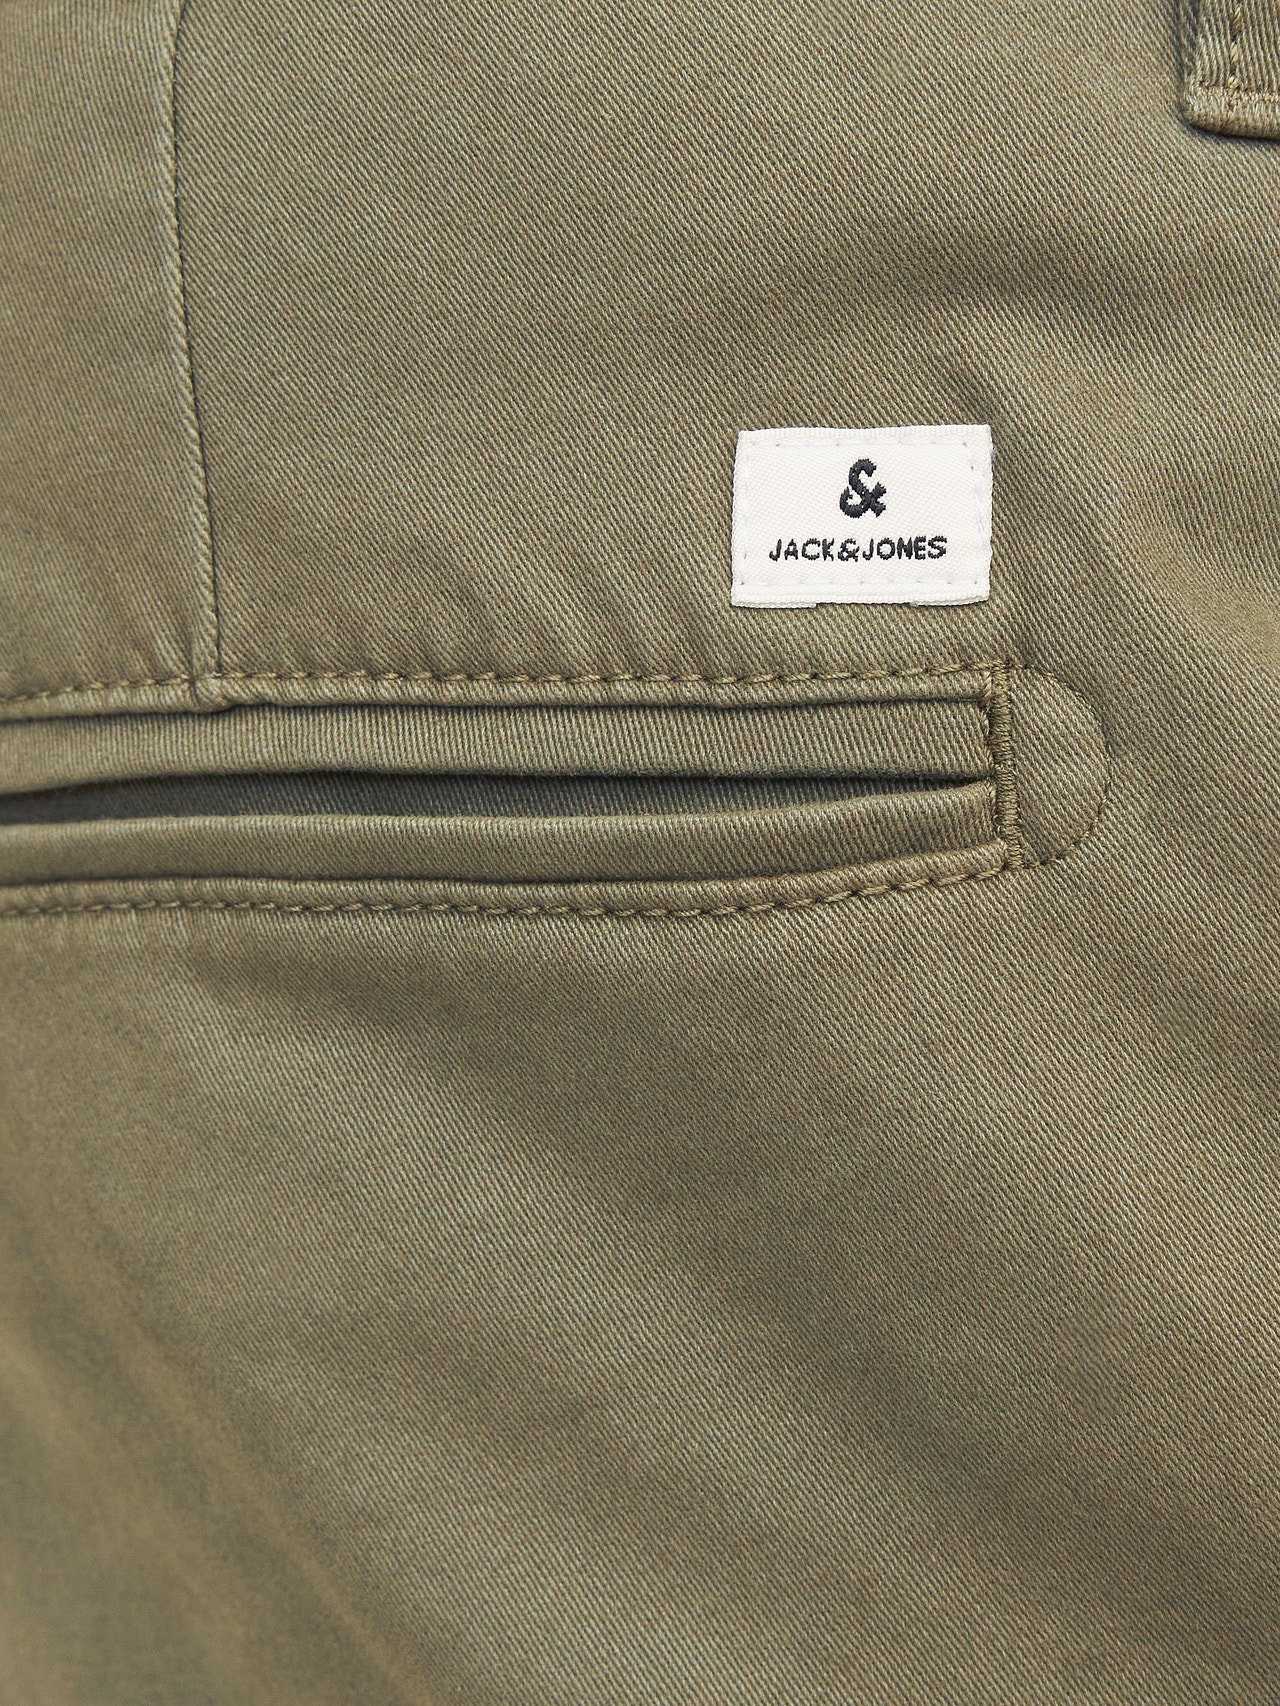 Jack & Jones Slim Fit Spodnie chino -Dusty Olive - 12174152